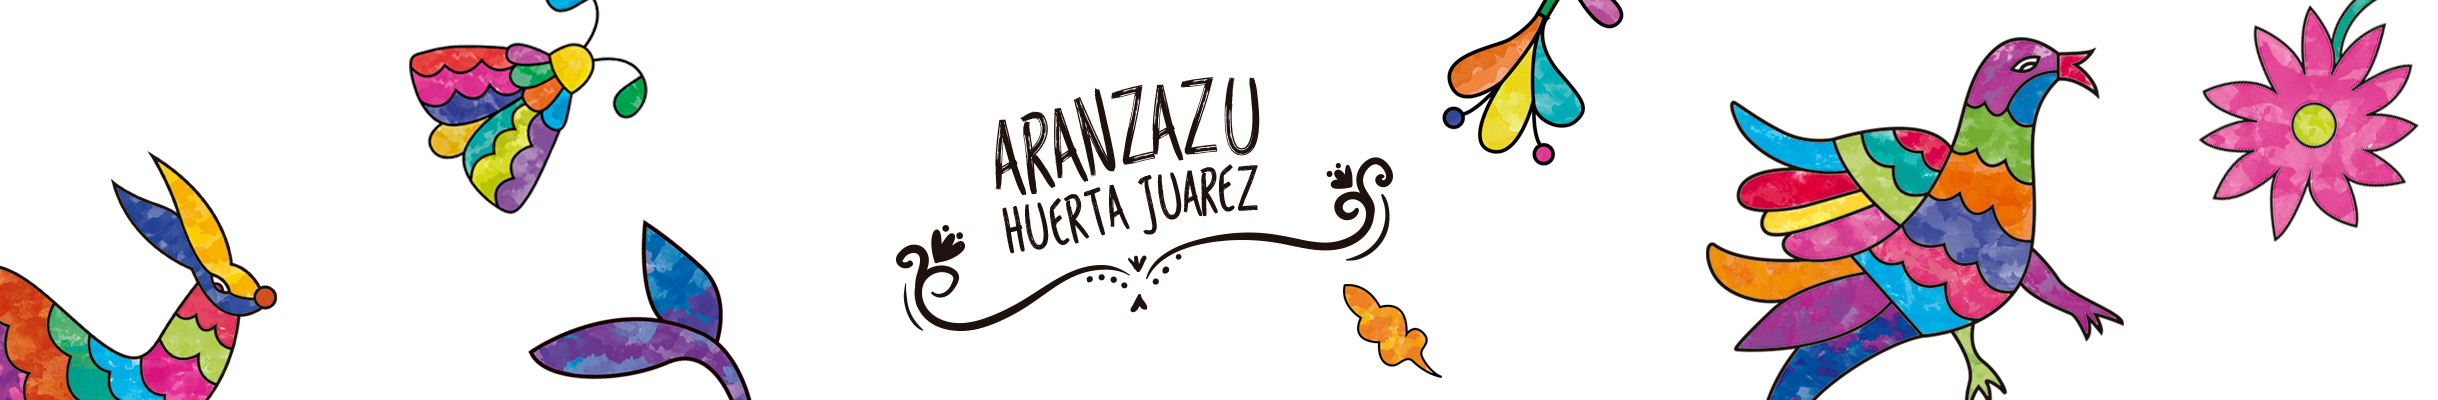 Aranzazu Hz's profile banner